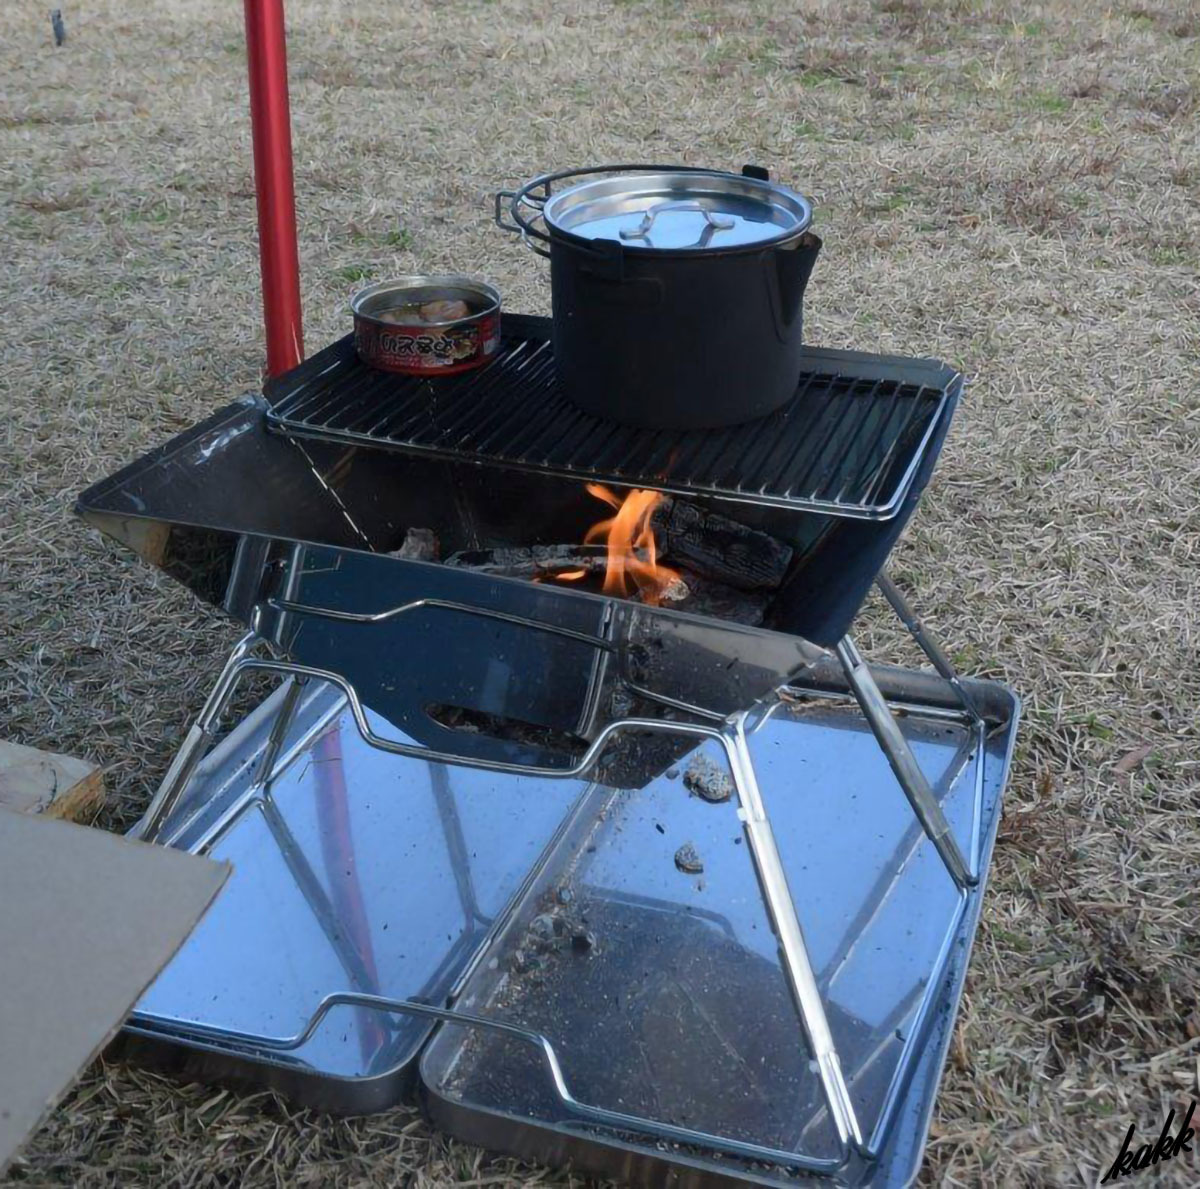 【熱に強く変形しにくい】 焚き火台 3-4人用 専用収納ケース付き ステンレス製 お手入れ簡単 バーベキューグリル キャンプ アウトドア BBQ